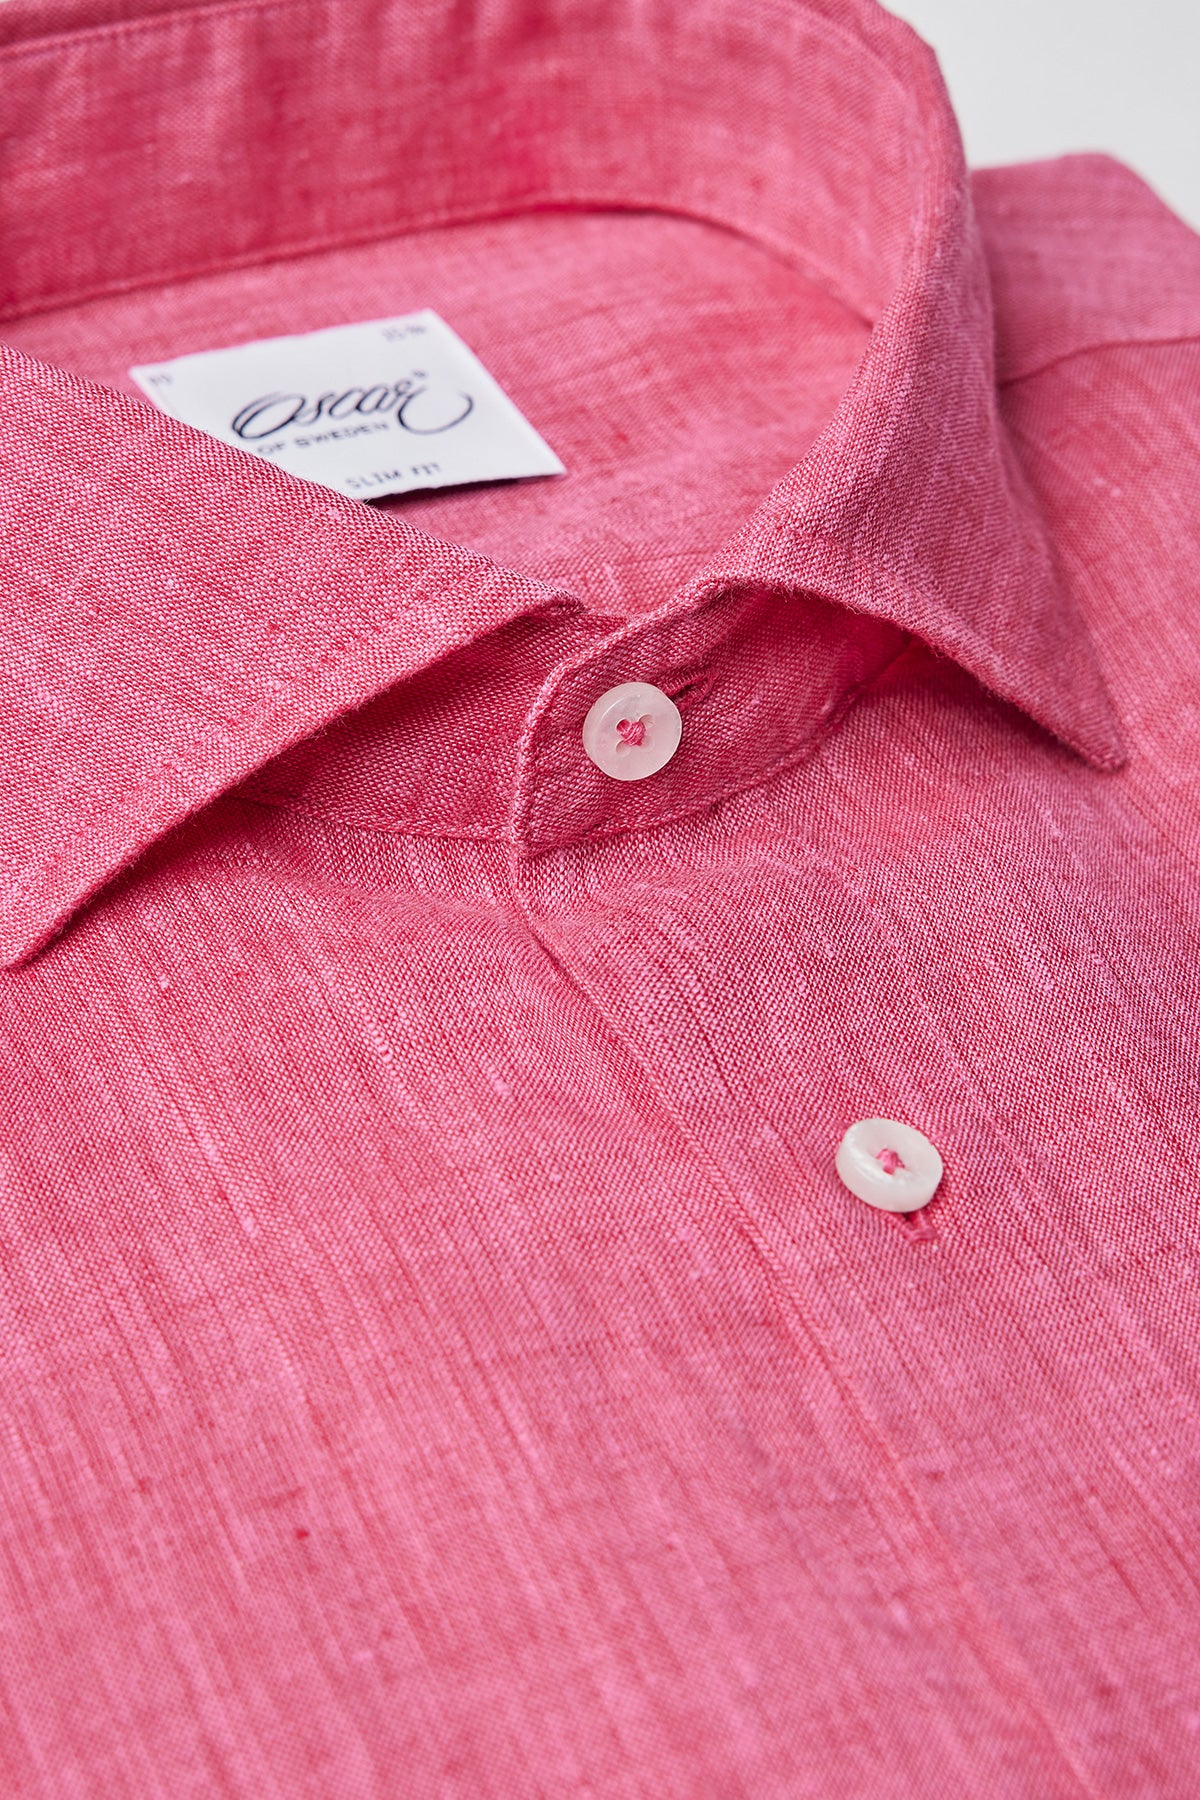 Pink slim fit linen shirt